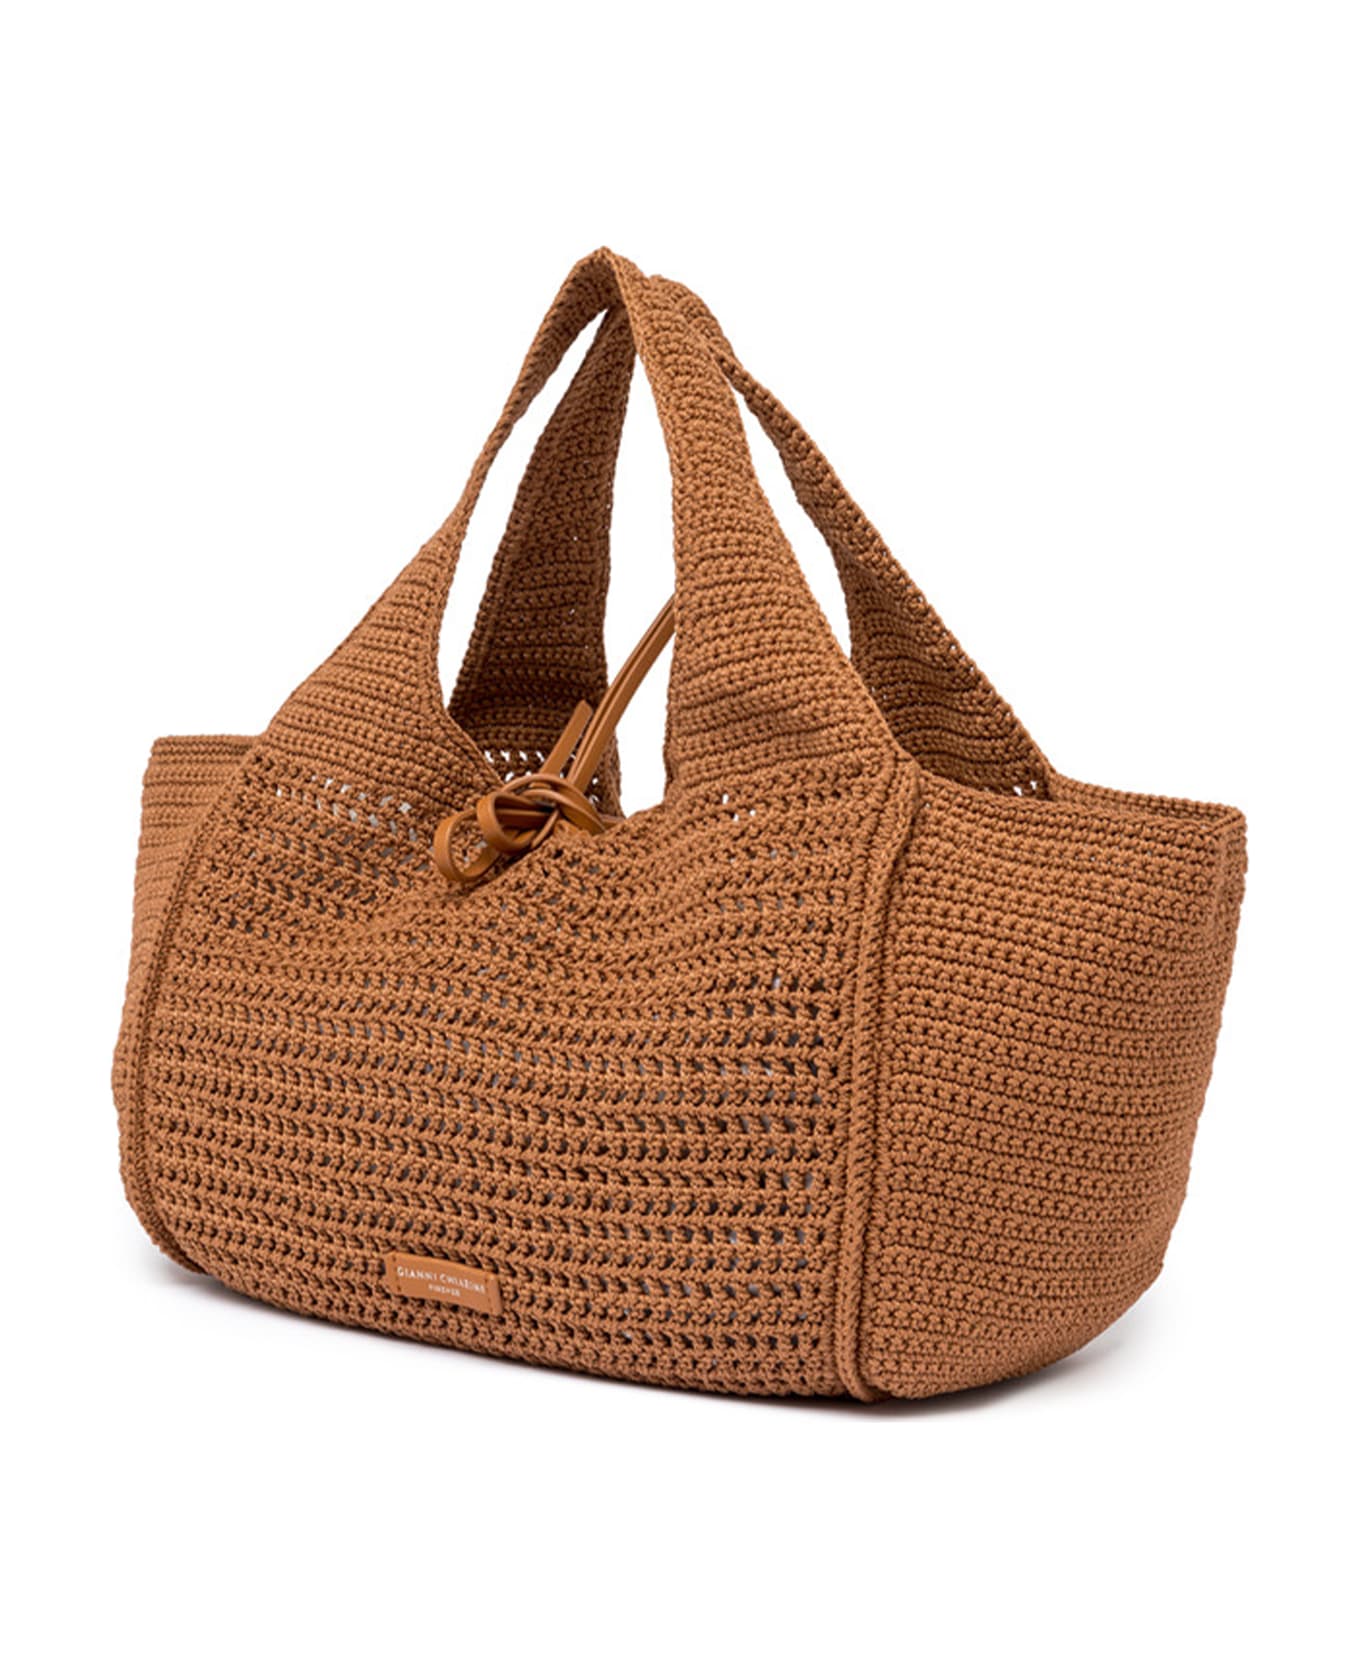 Gianni Chiarini Euforia Leather Shopping Bag In Crochet Fabric - COPPER